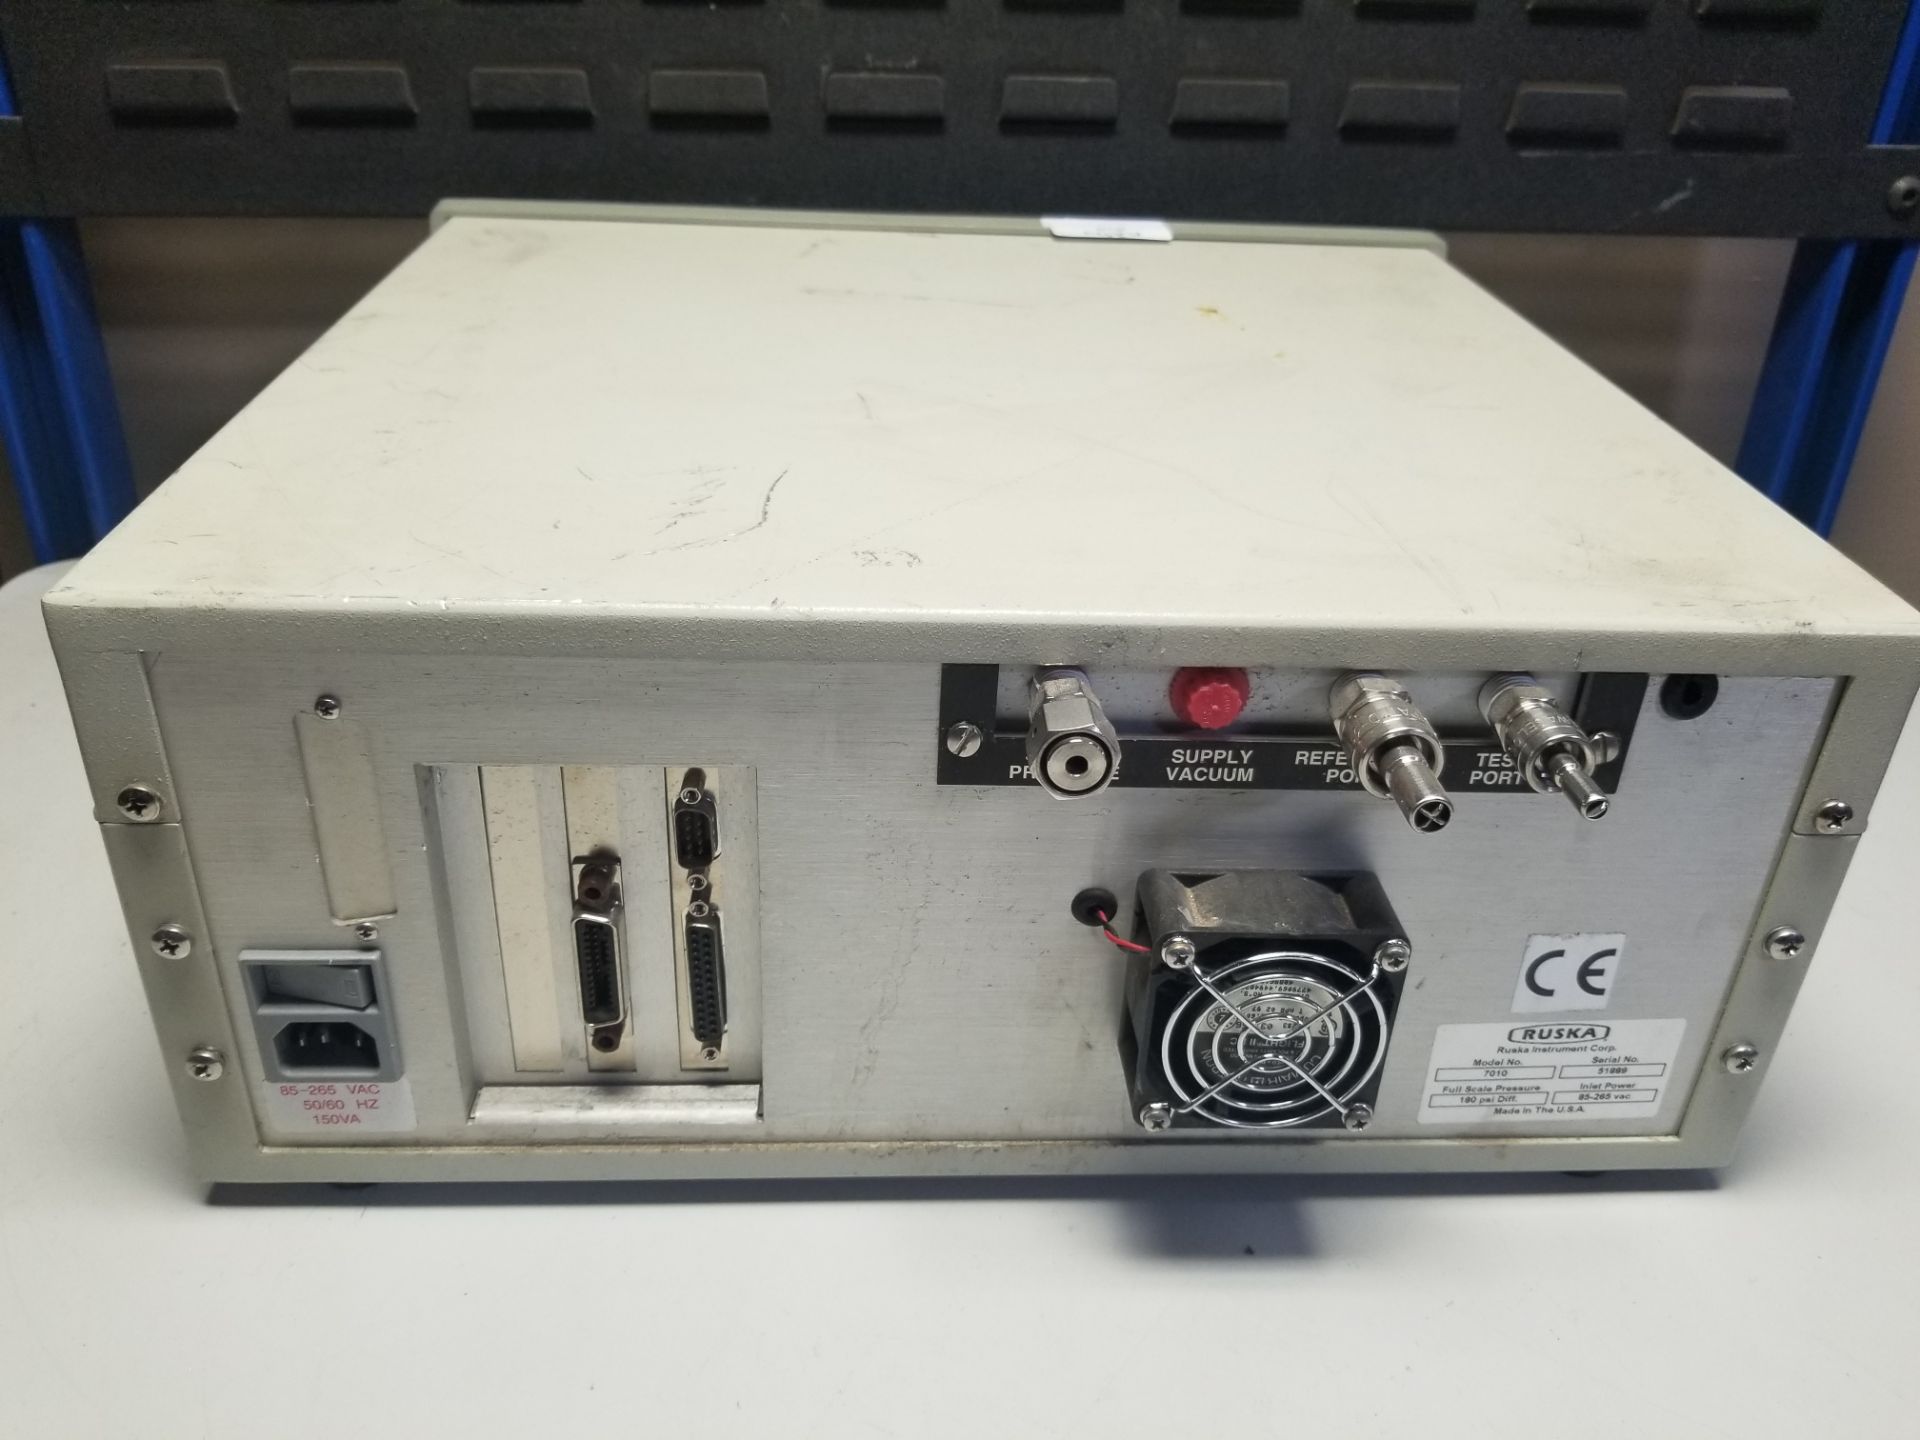 Ruska Model 7010 Digital Pressure Controller - Image 8 of 10